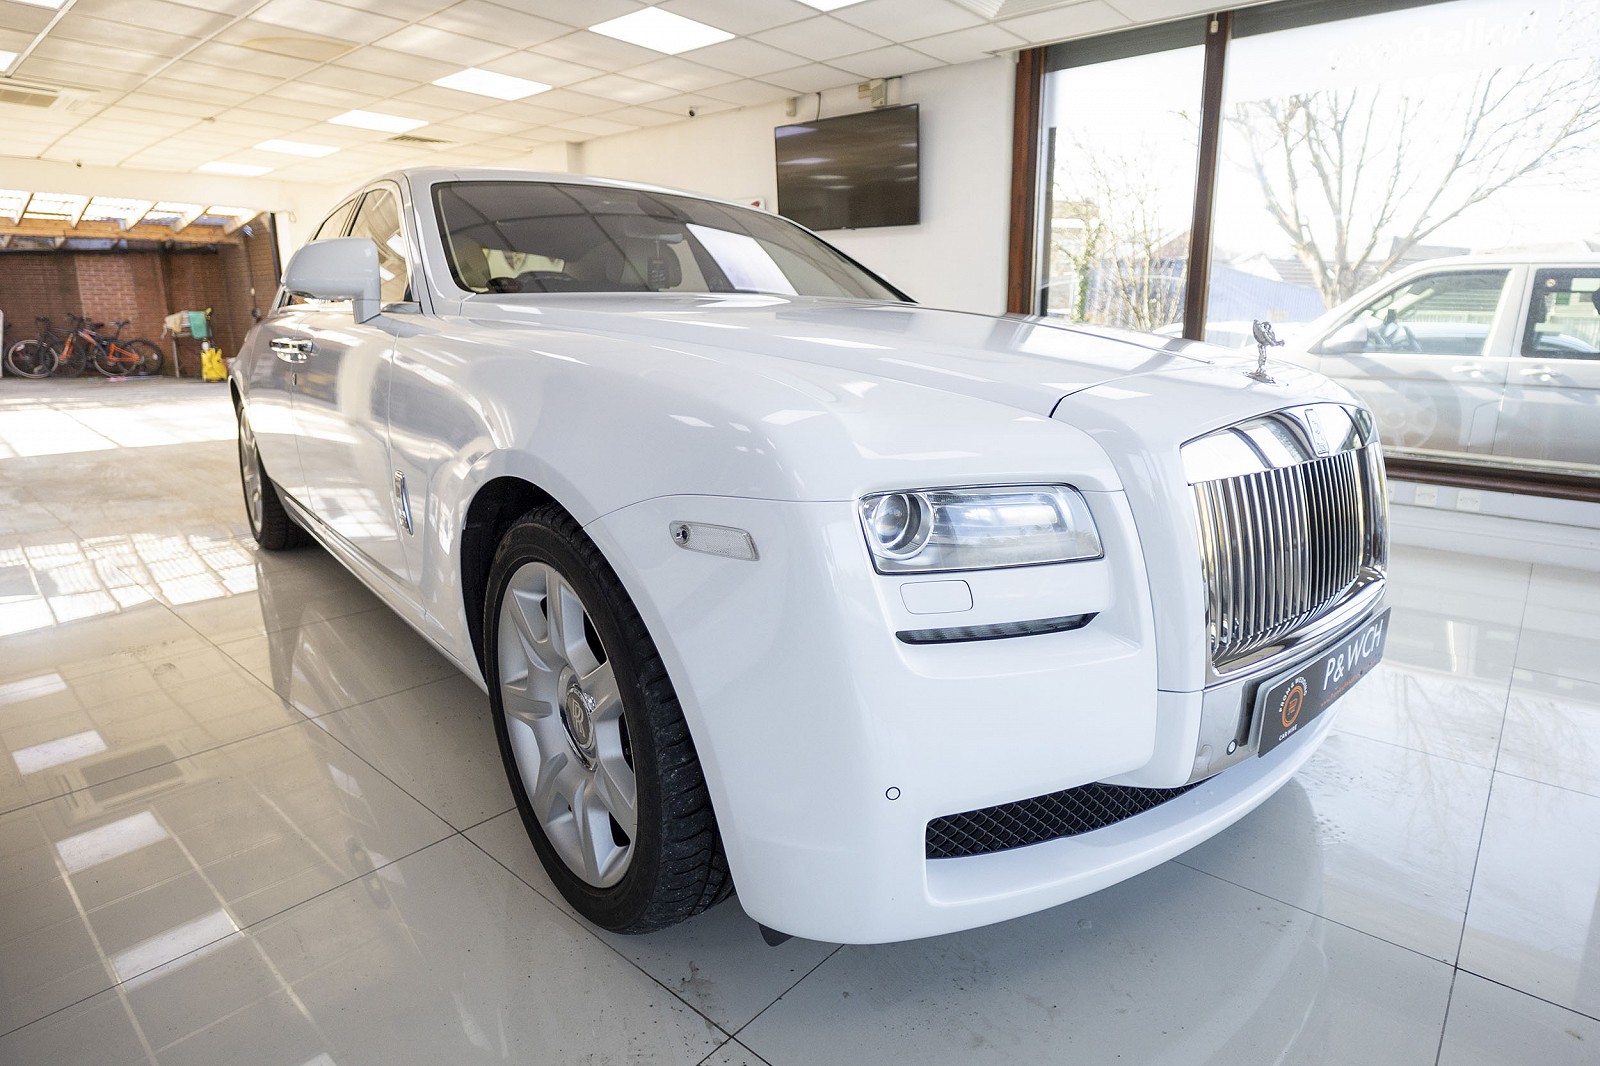 Grey Rolls Royce Phantom Prom Car Hire  Luxury Car Hire